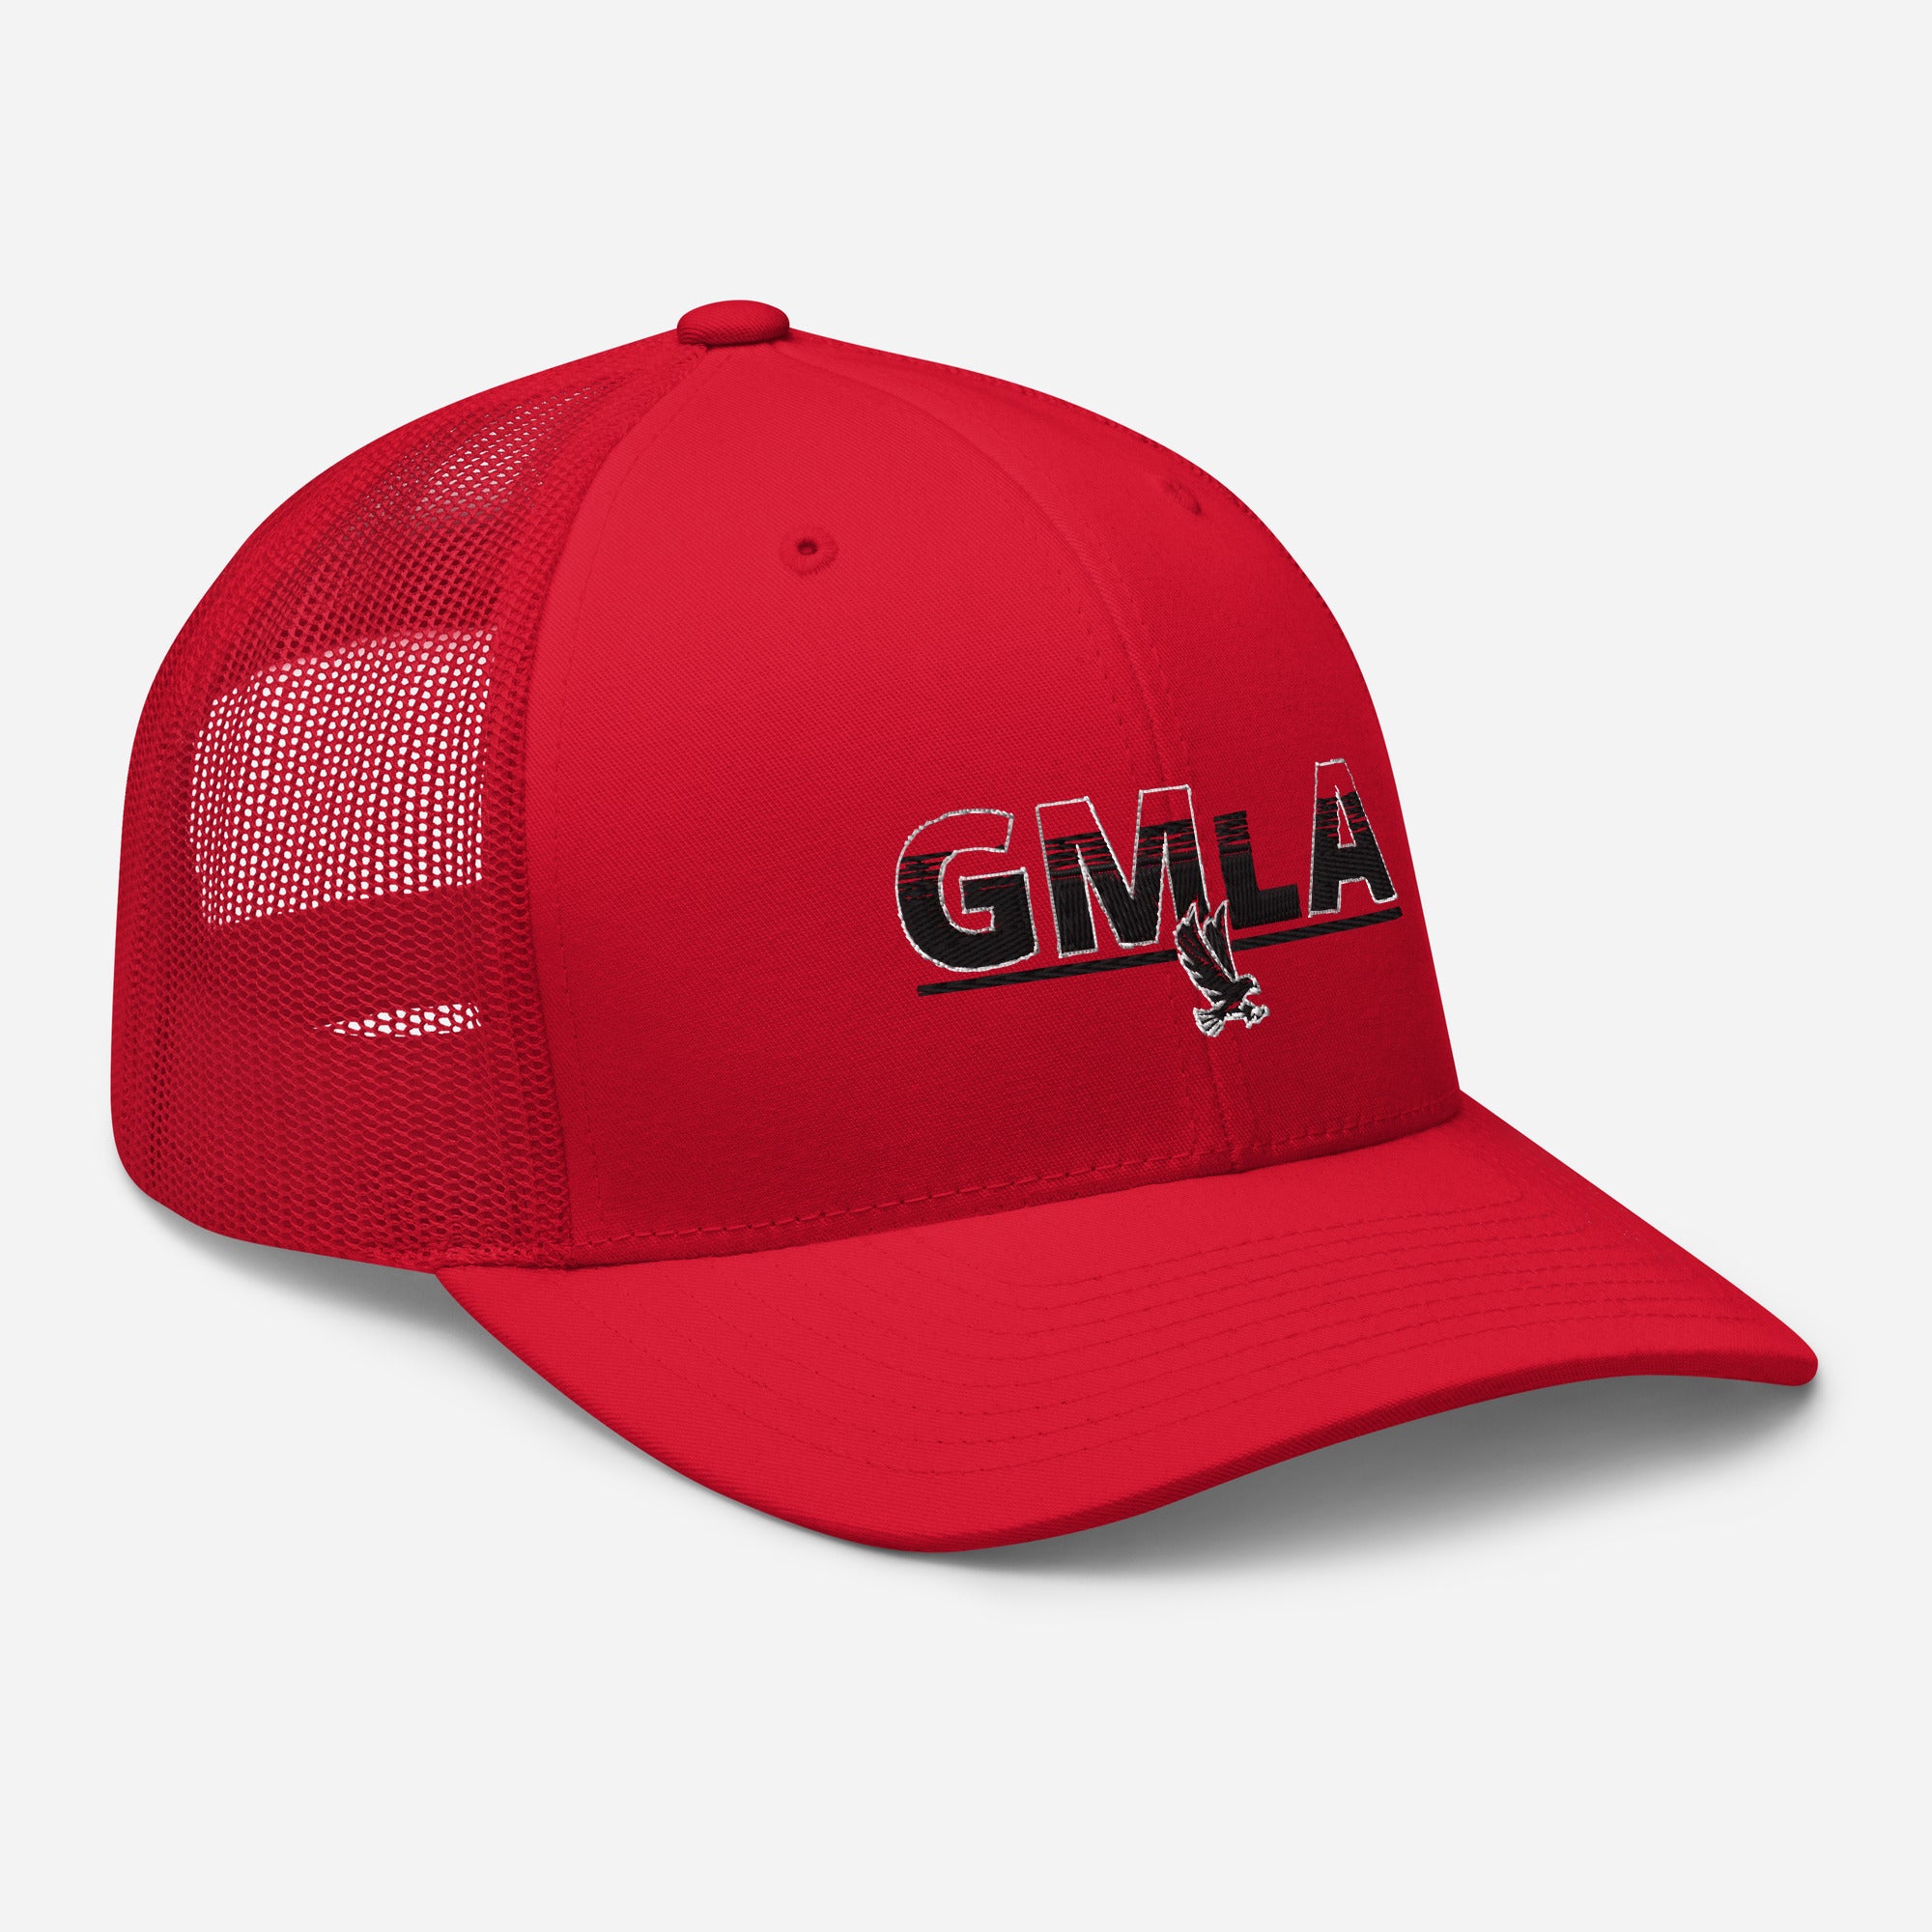 GMLA Trucker Cap